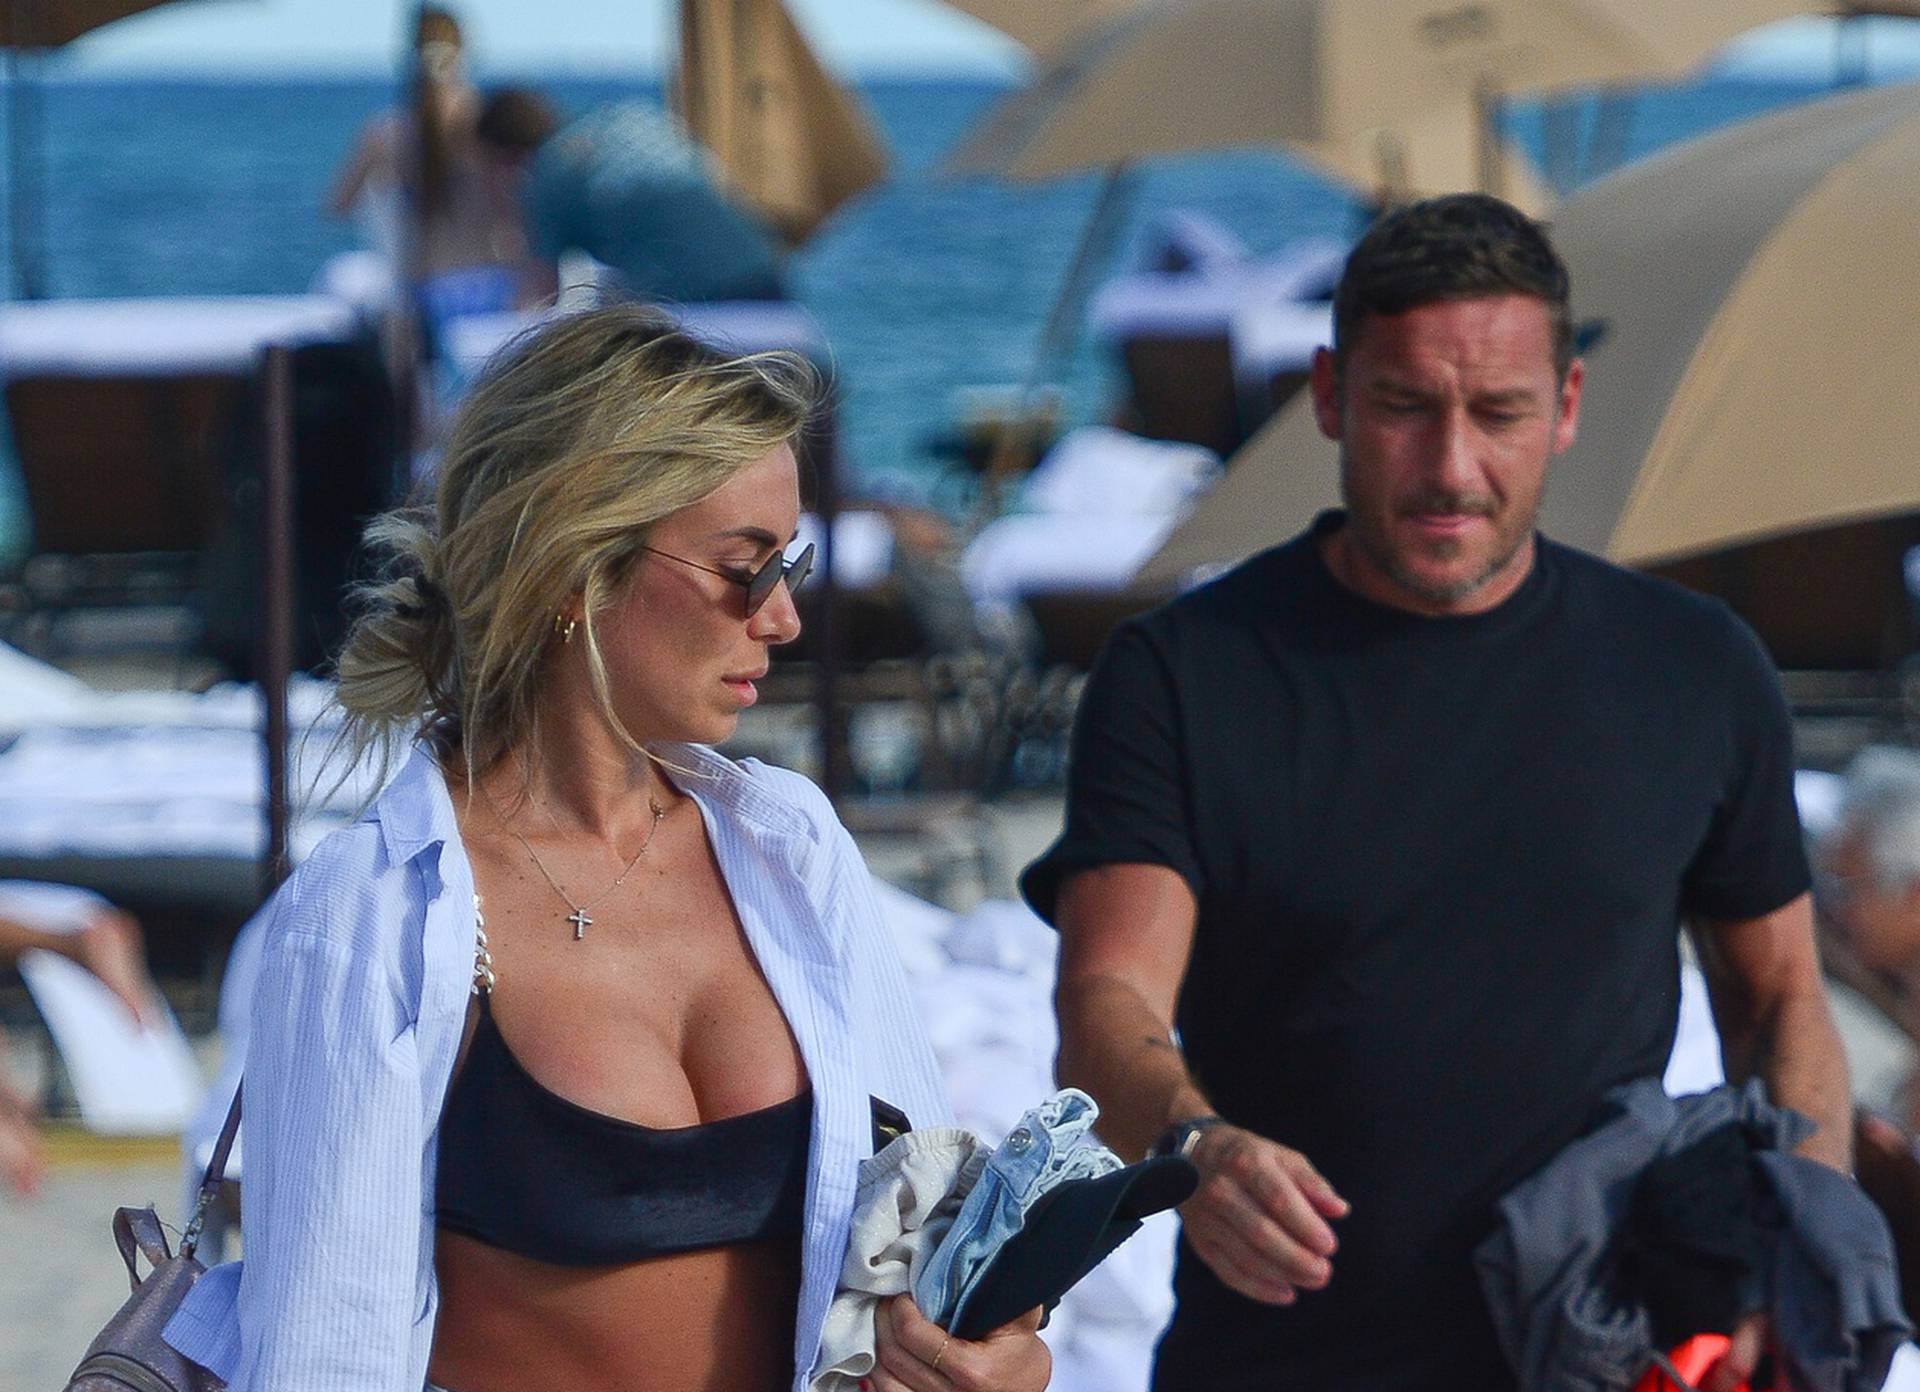 Francesco Totti enjoys the Miami Sunshine